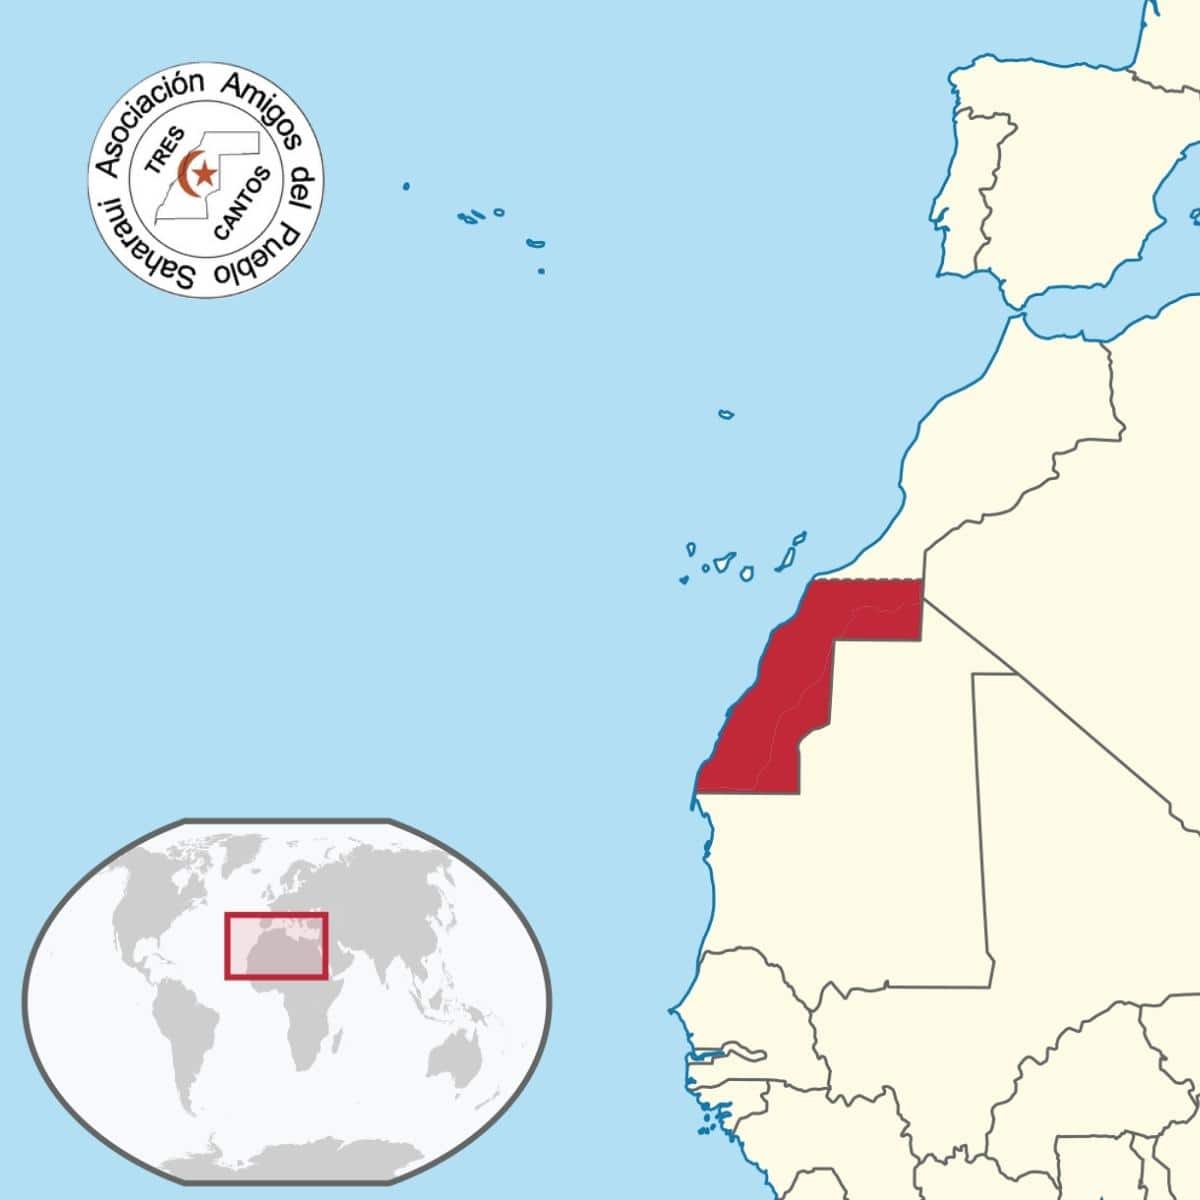 Situación geográfica y extensión del pueblo Saharaui